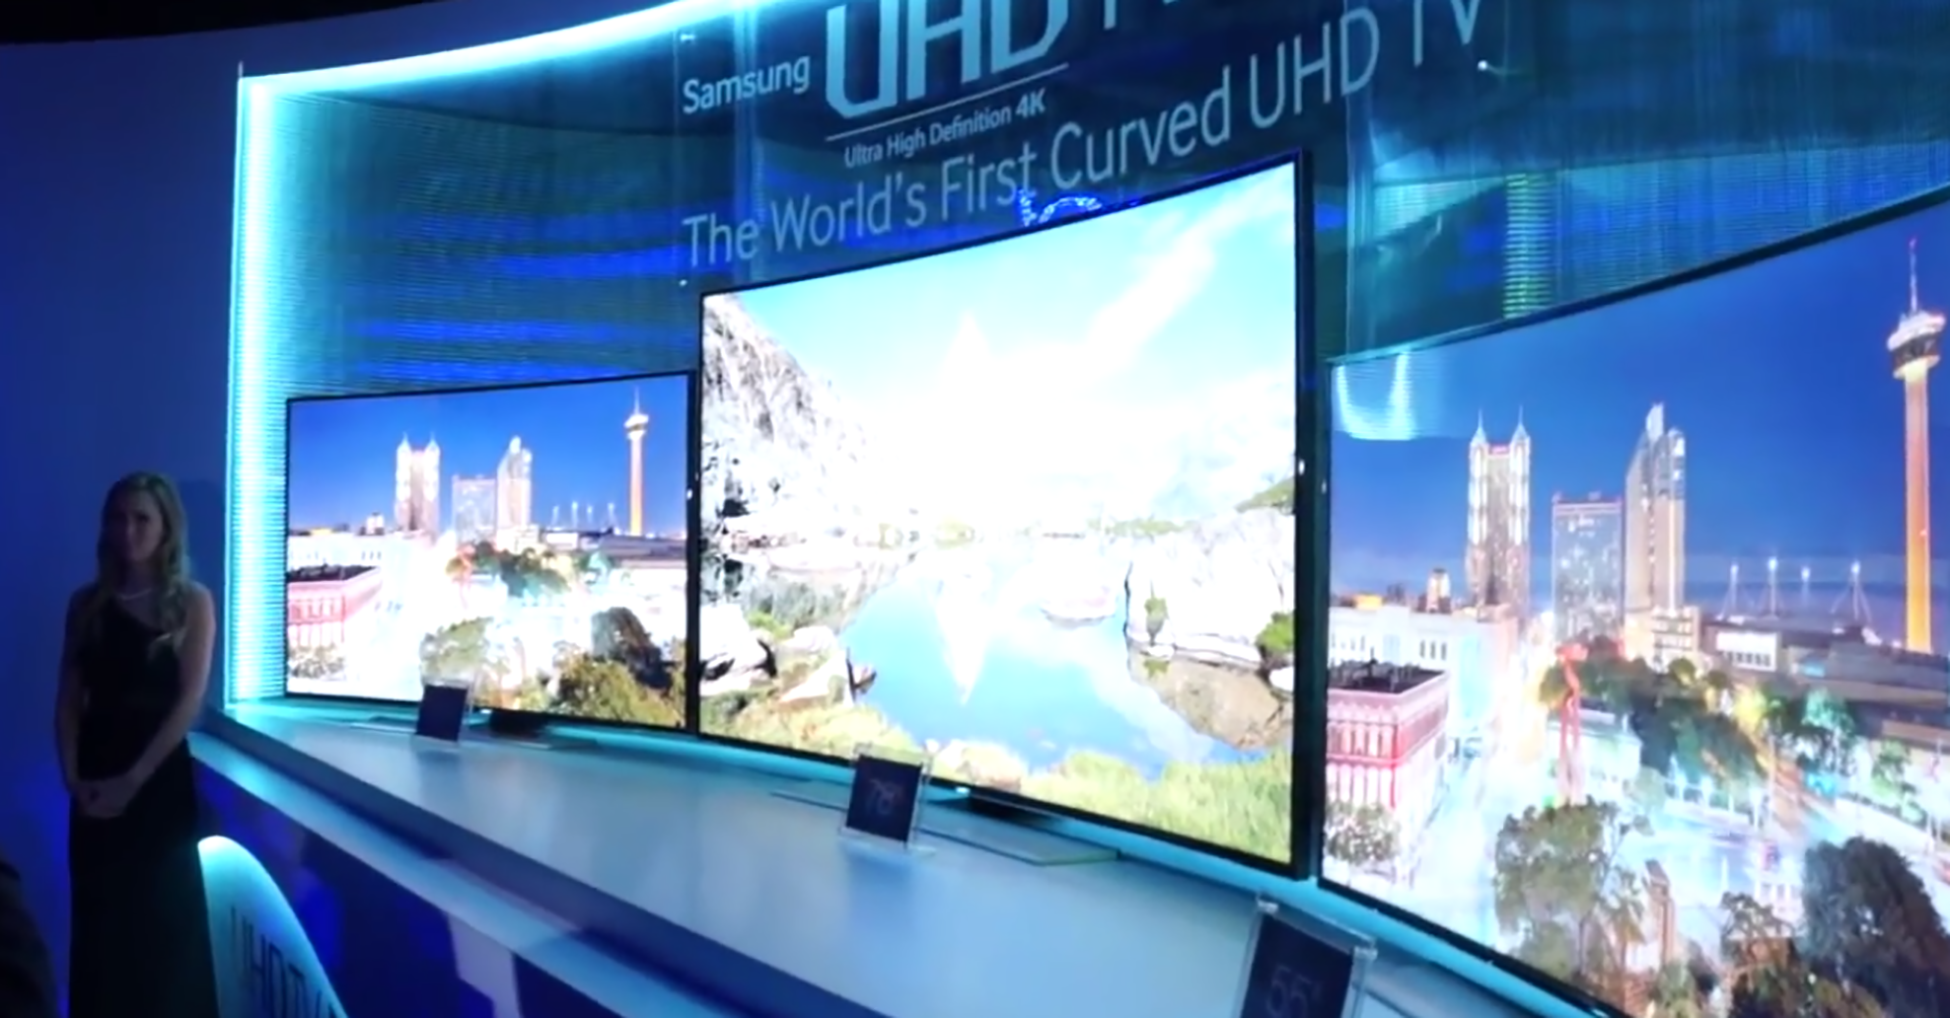 تُظهر الصورة تلفزيونًا كبيرًا بشاشة مقعرة. توجد فوق شاشة التلفزيون لافتة مكتوب عليها Samsung U H D، أول حرف U H D T V منحني في العالم